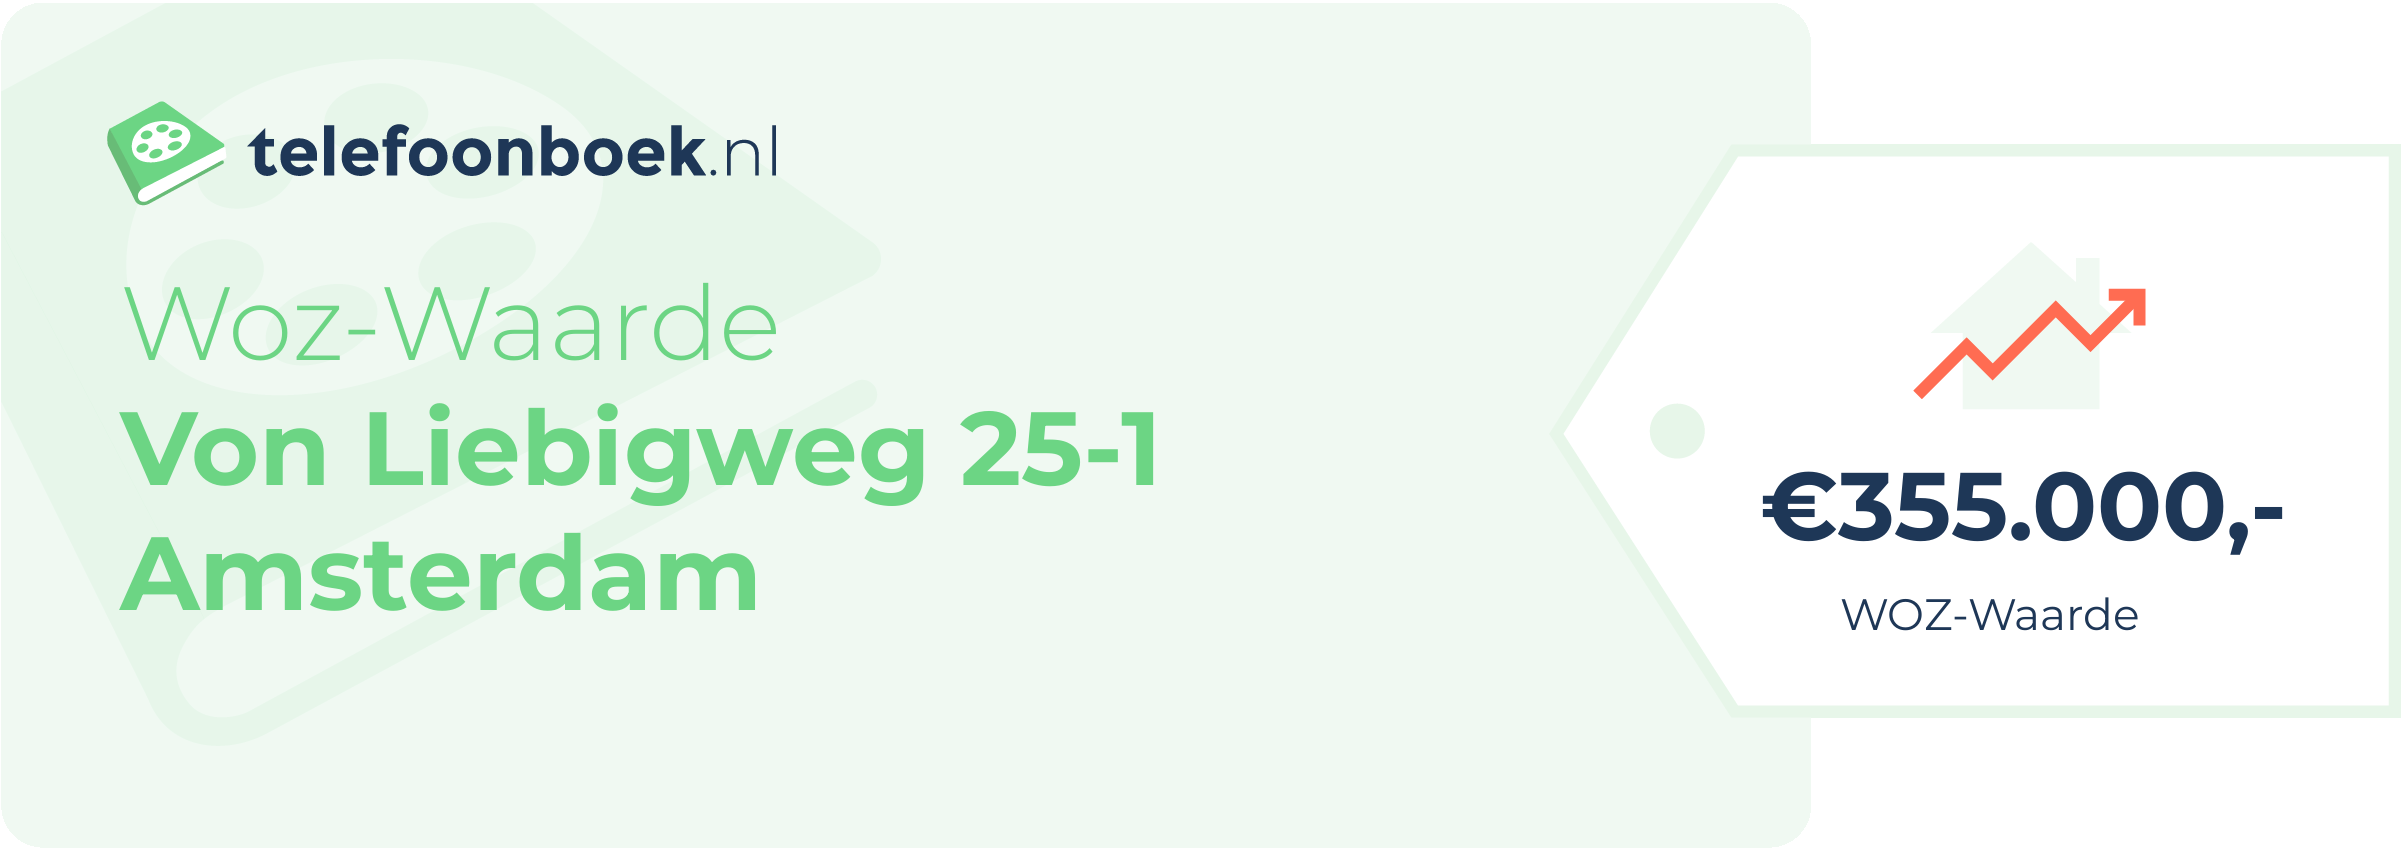 WOZ-waarde Von Liebigweg 25-1 Amsterdam